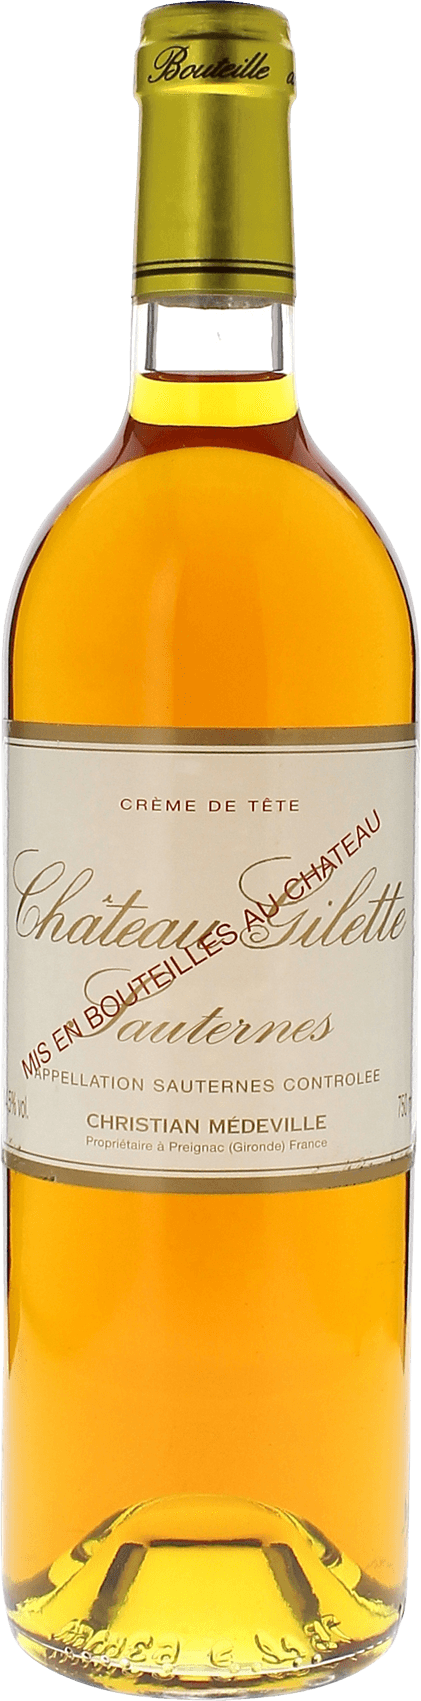 Gilette creme de tte 1976  Sauternes, Bordeaux blanc